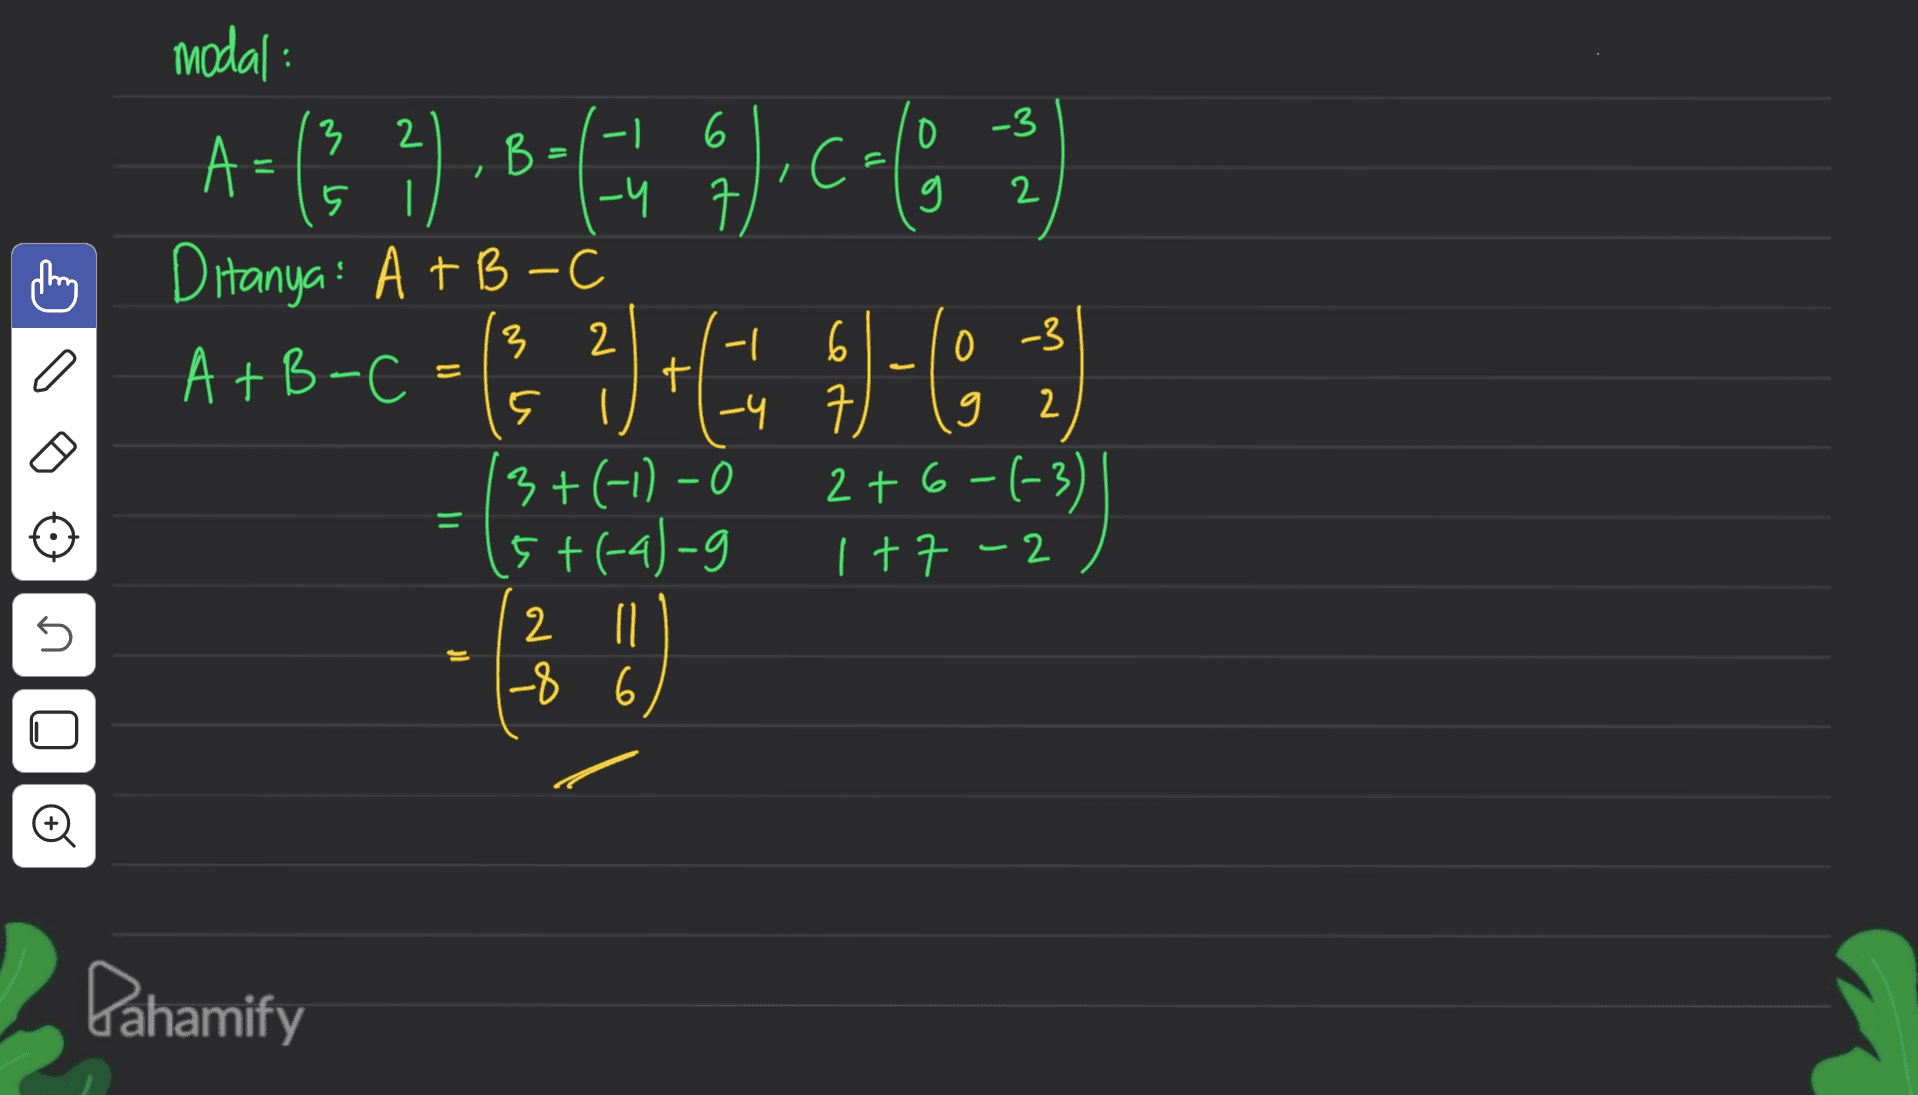 2 modal : 3 2 6 -3 A: B B = ,C= | Ditanya: A+B - - 6 0 -3 A+B-C + ç I -4 7 9 2 3+(-11-0 2+6-(-3) 5+(-4)-g 1 +7 -2 2 n -8 6 3+4+ = 5 If Pahamify 